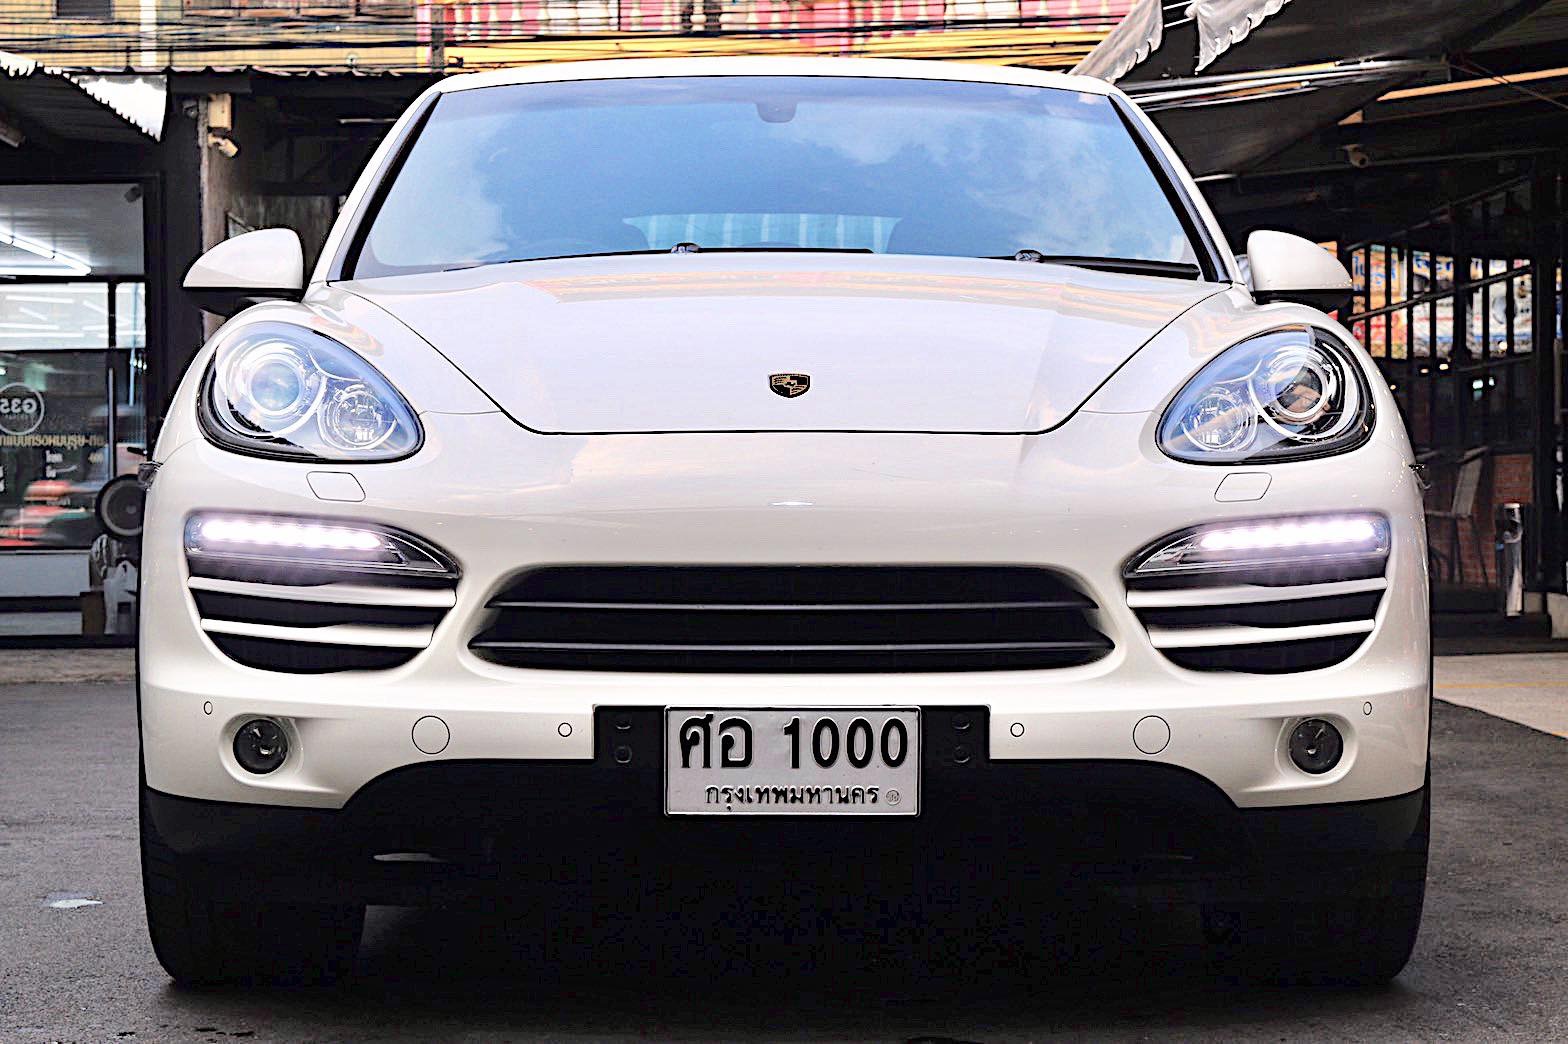 Porsche Cayenne ปี 2012 สีขาว